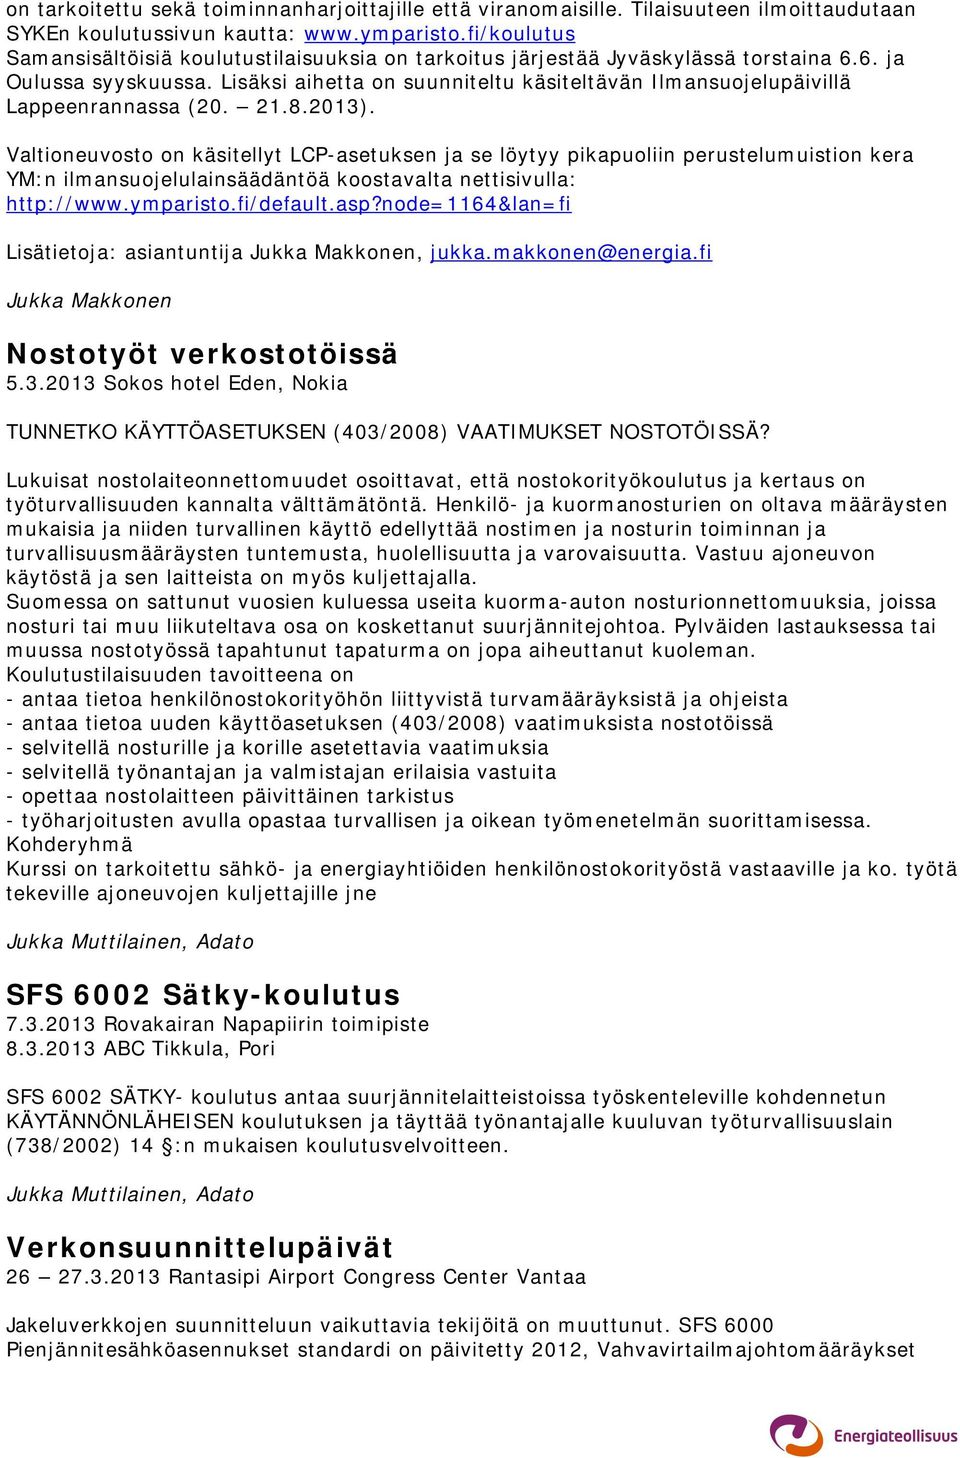 Lisäksi aihetta on suunniteltu käsiteltävän Ilmansuojelupäivillä Lappeenrannassa (20. 21.8.2013).